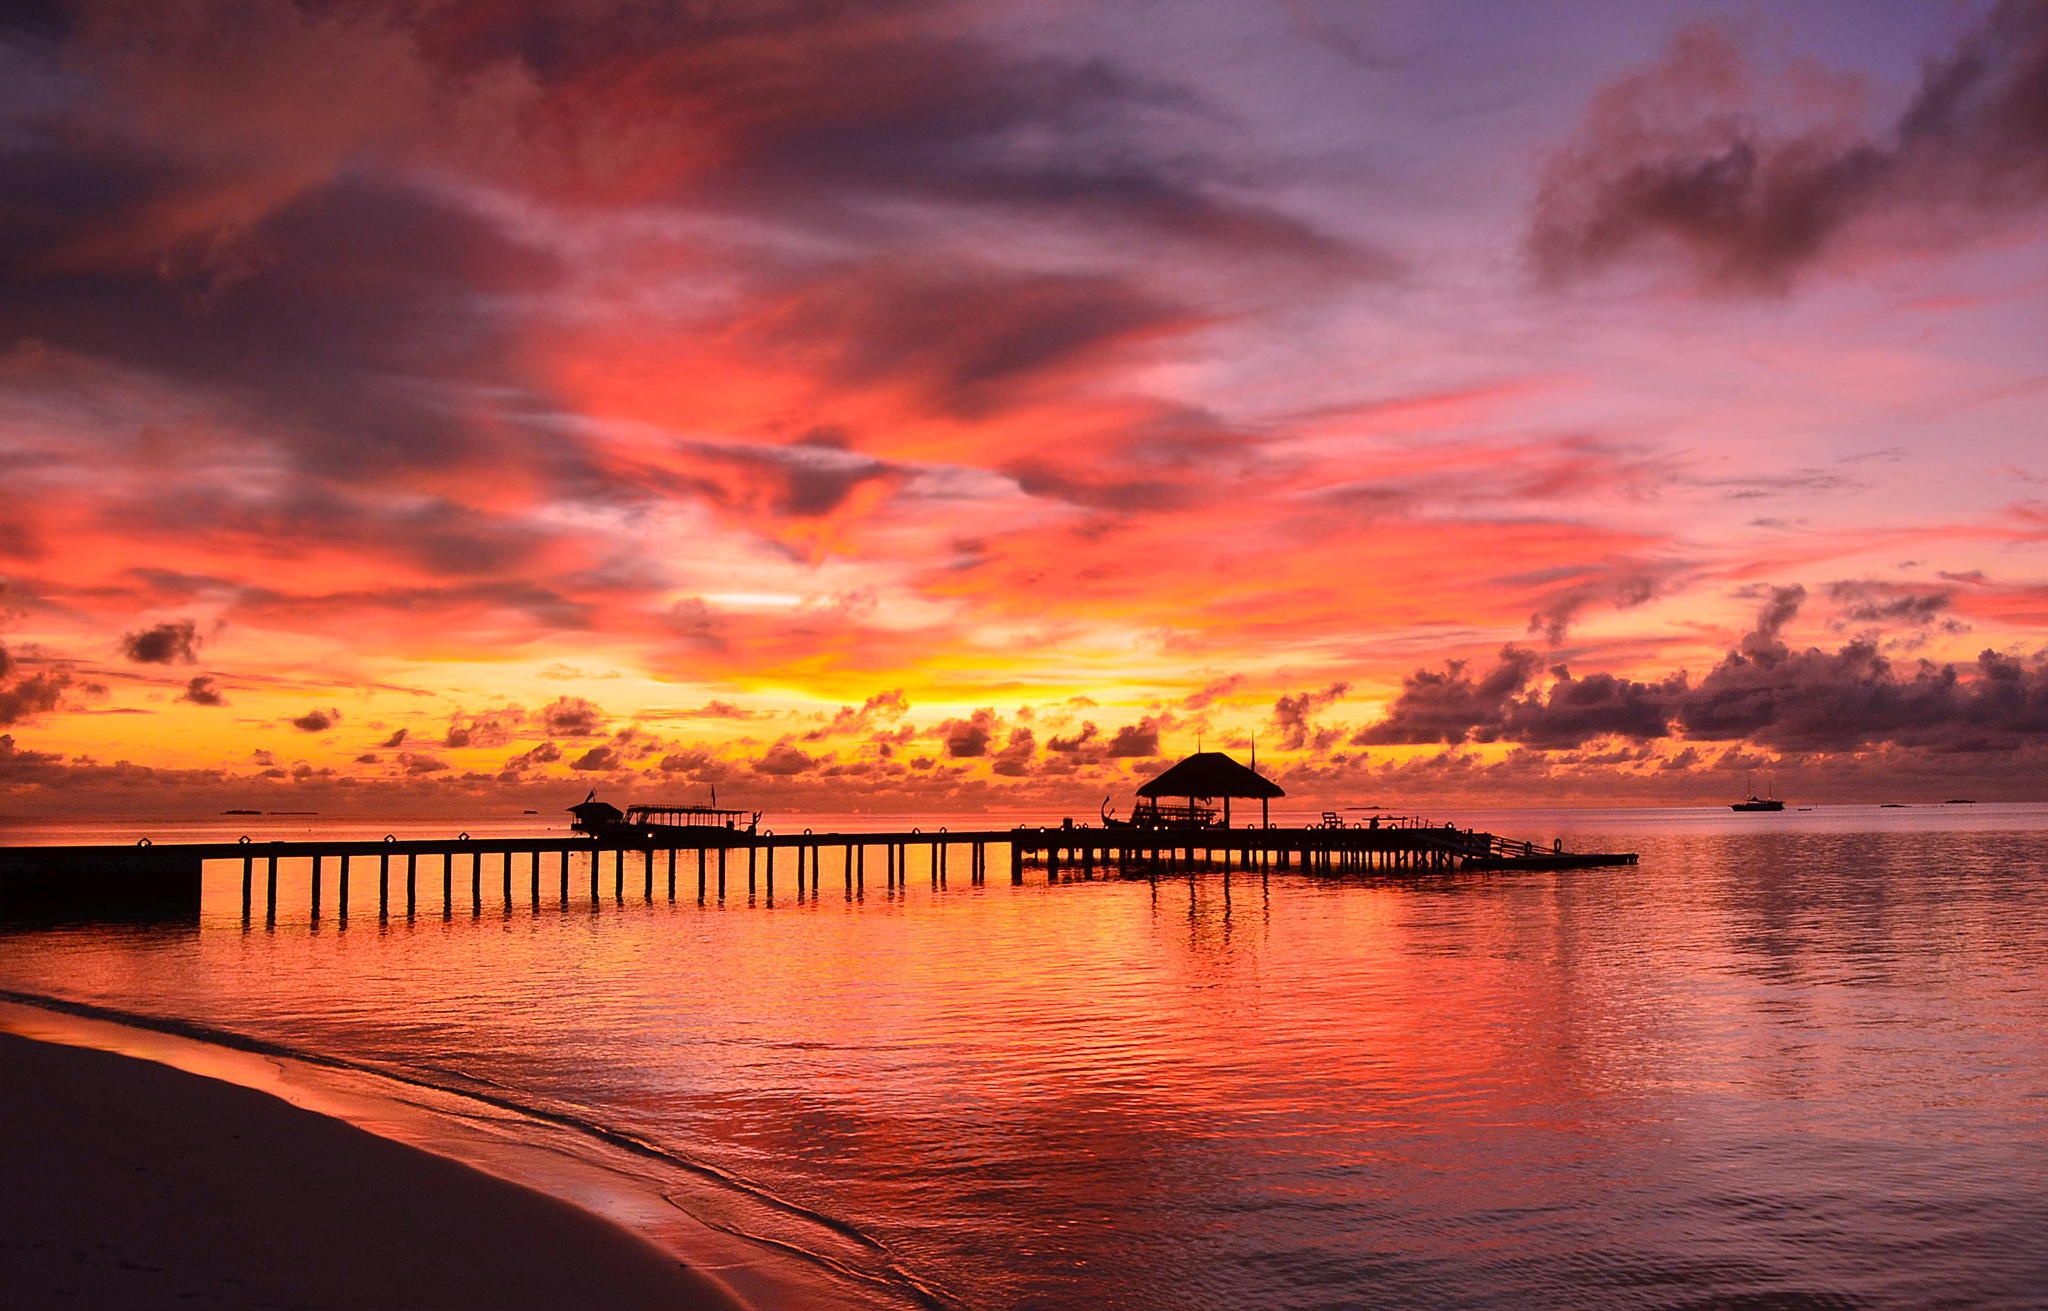 Picture Maldives Sea Nature Sunrises and sunsets Coast Marinas